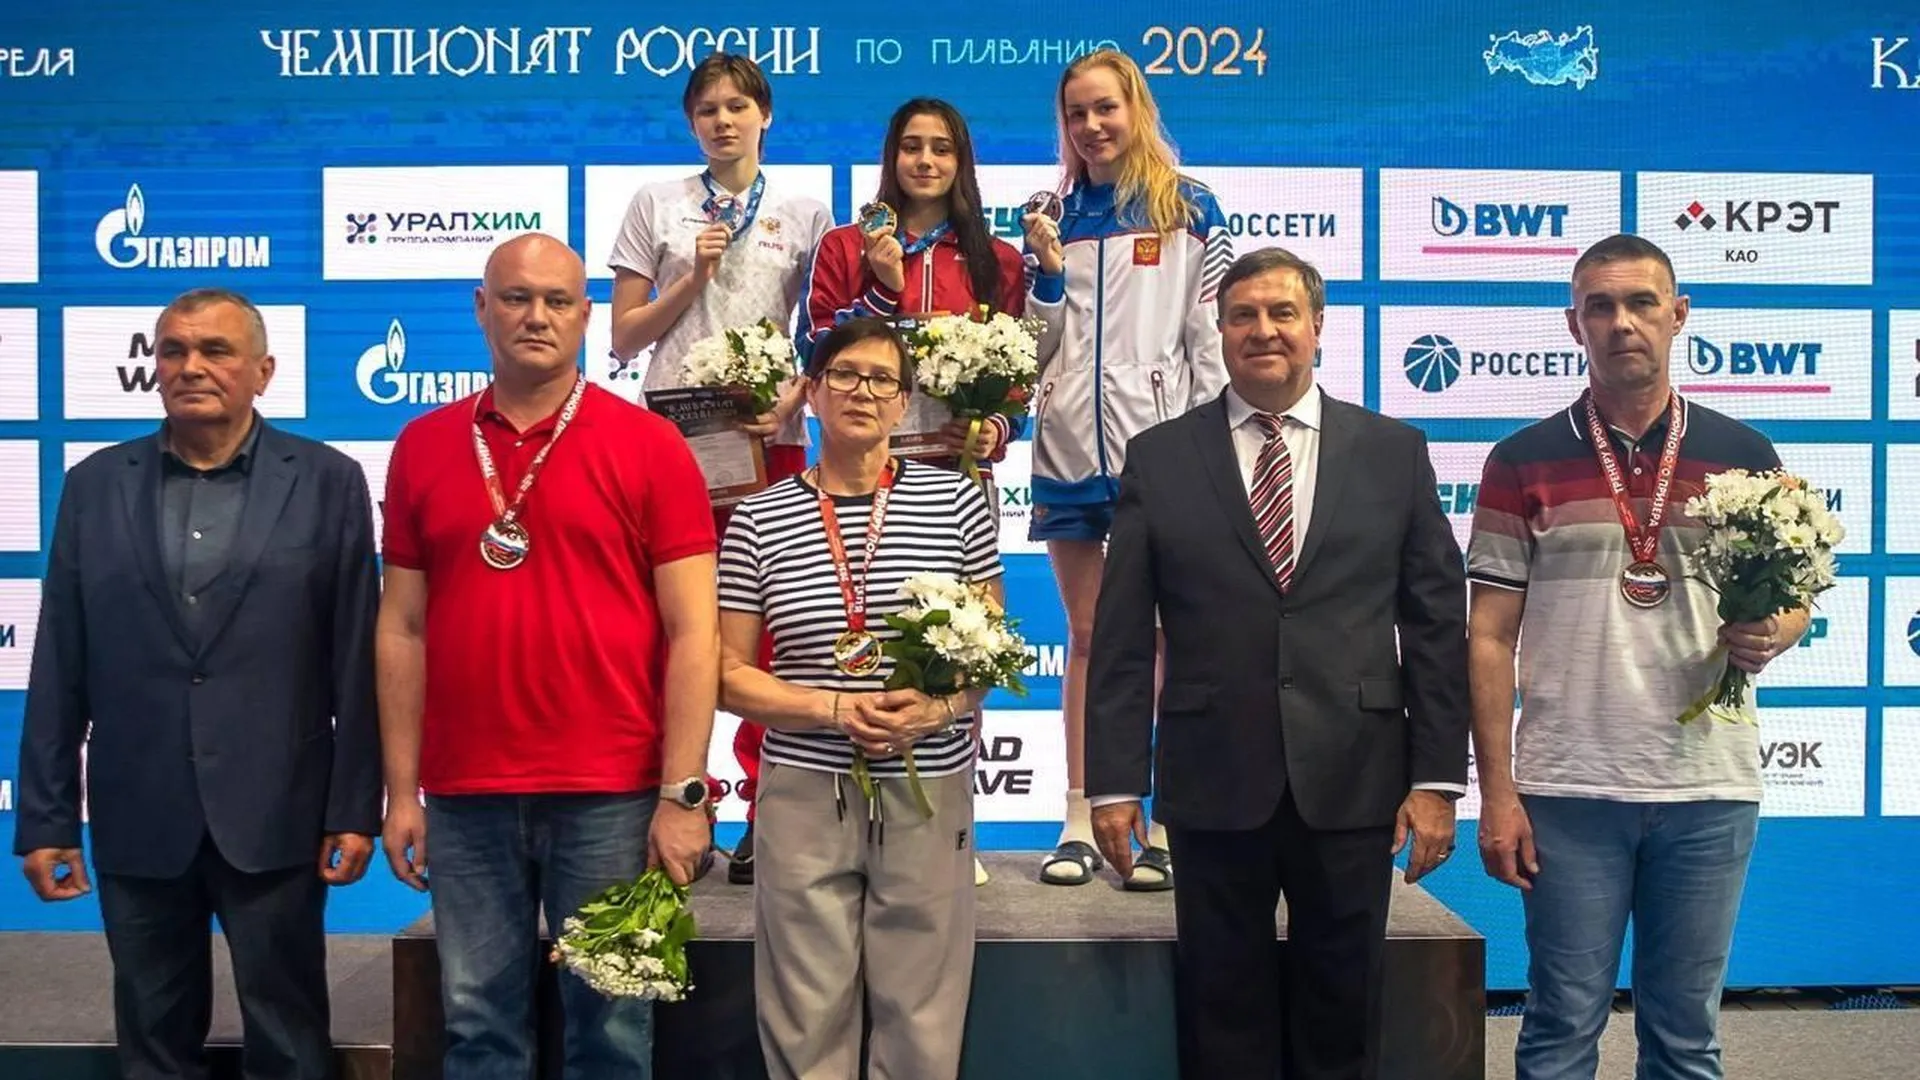 Дарья Рогожинова из Подмосковья стала чемпионкой России по плаванию